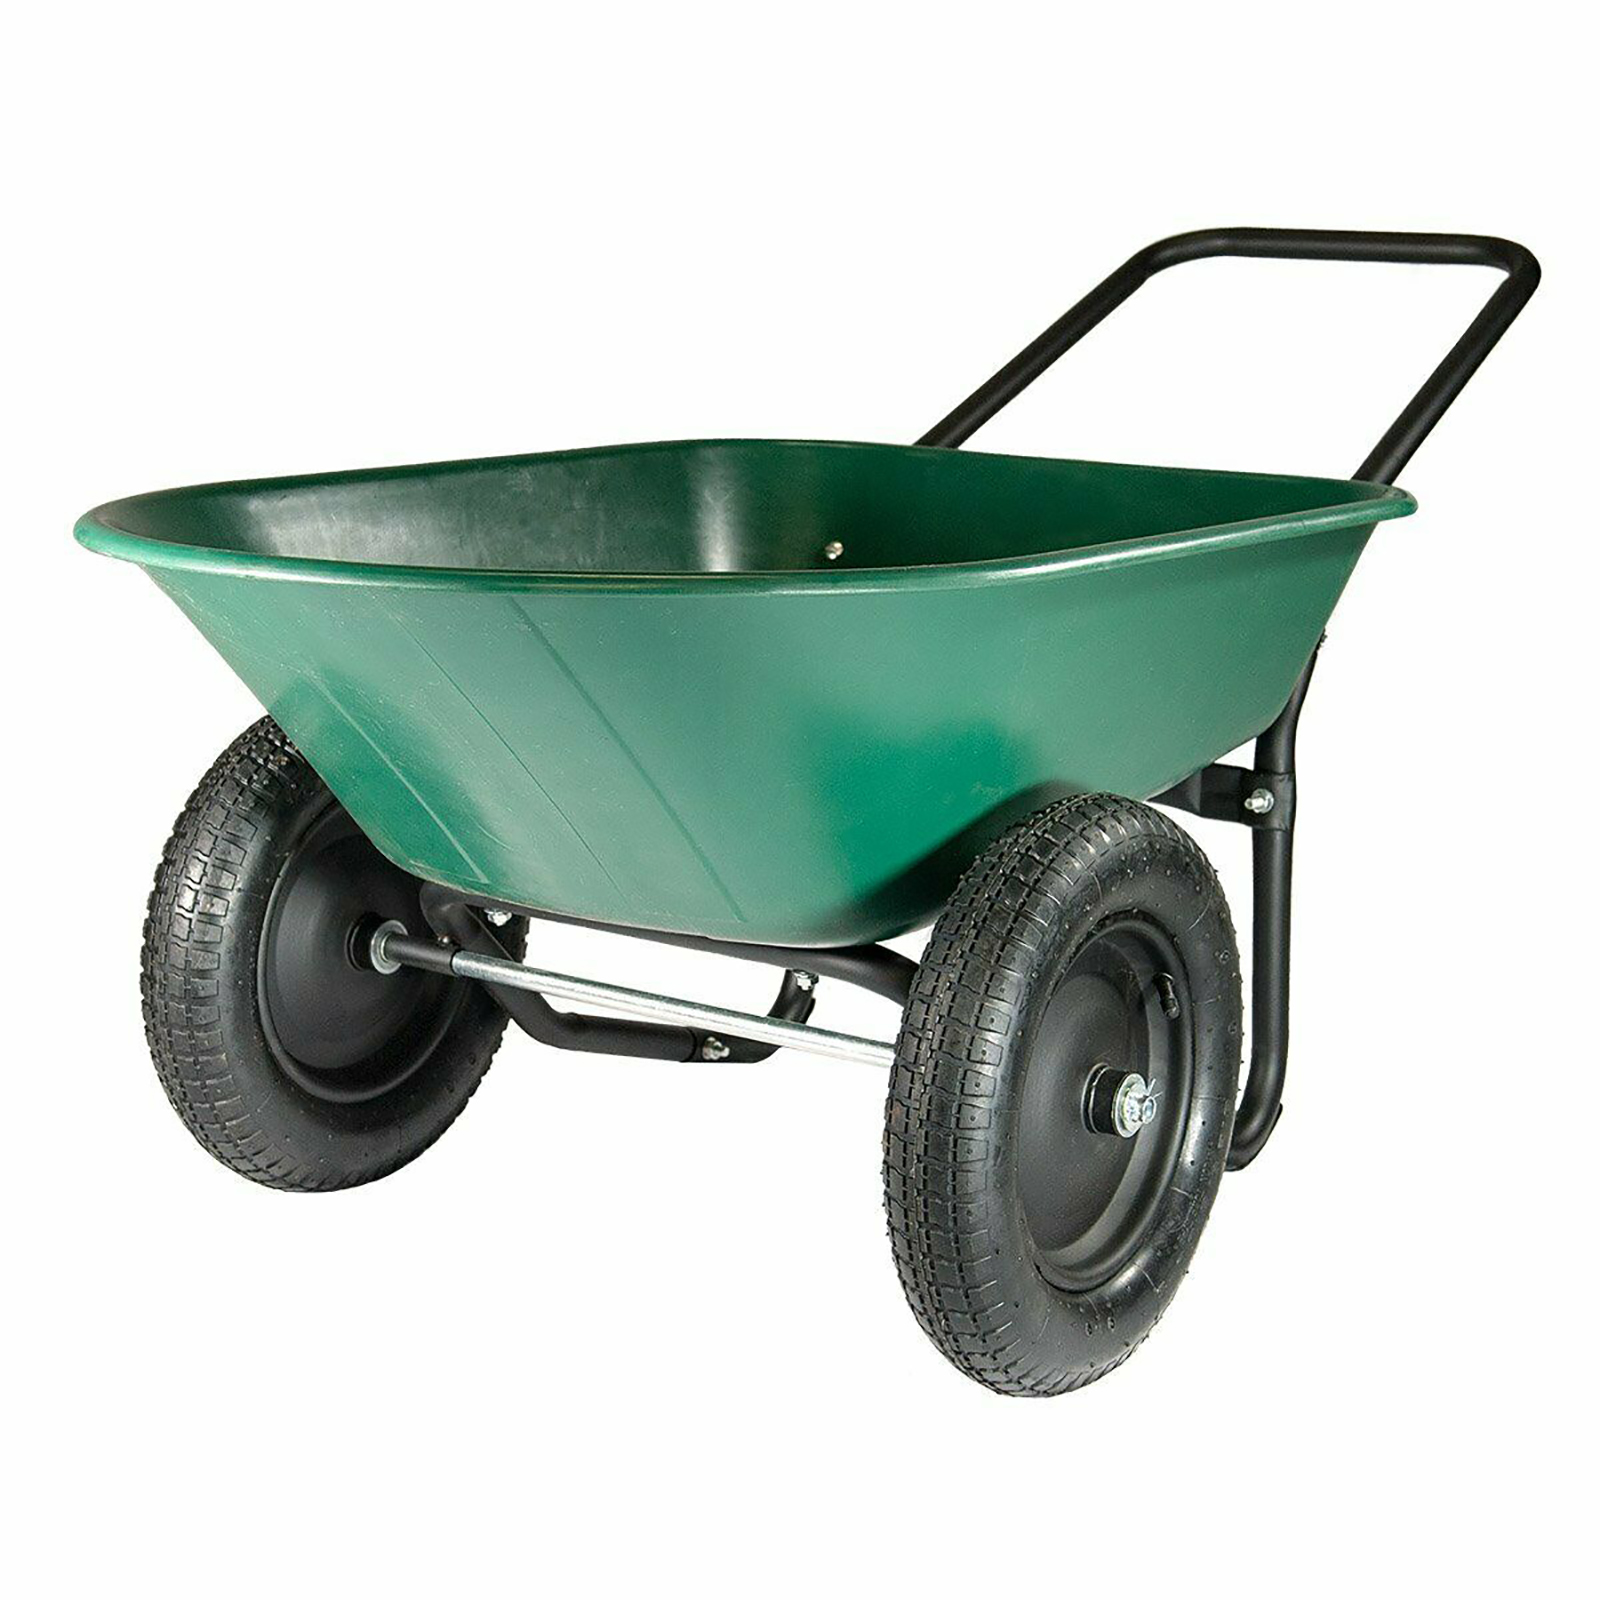 Marathon 70007-AMZ 2-tire Wheelbarrow Garden Cart - Green and Black